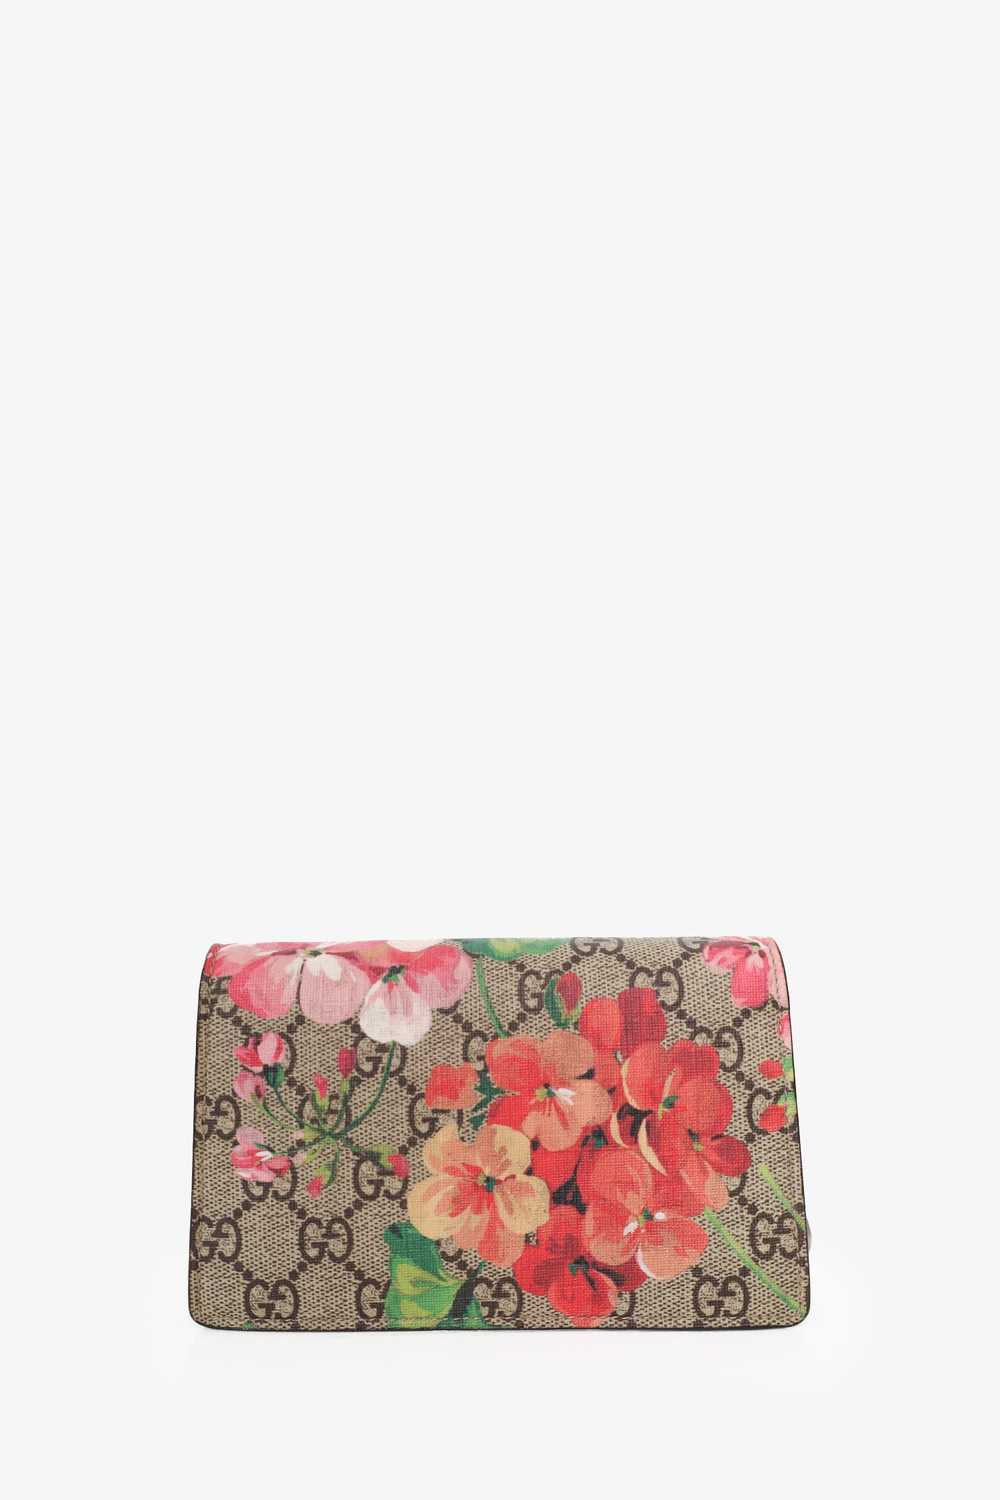 Gucci GG Supreme Canvas/Leather Super Mini Blooms… - image 2